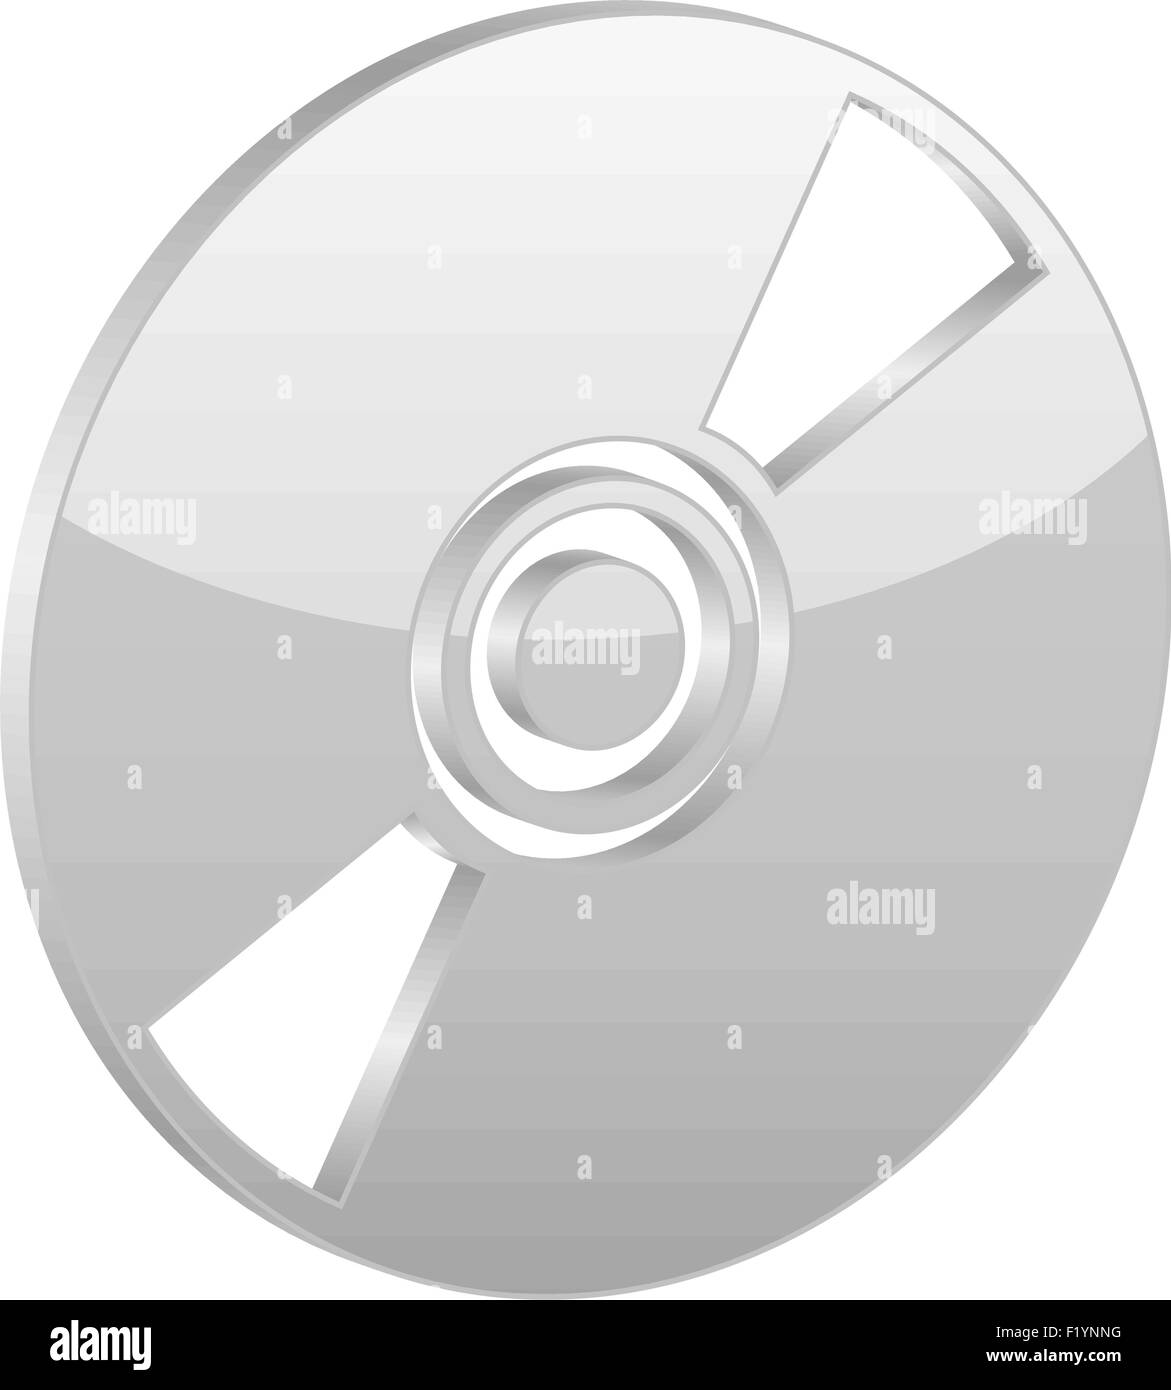 Grau-CD-Symbol auf einem weißen Hintergrund. Vektor-Illustration. Stock Vektor